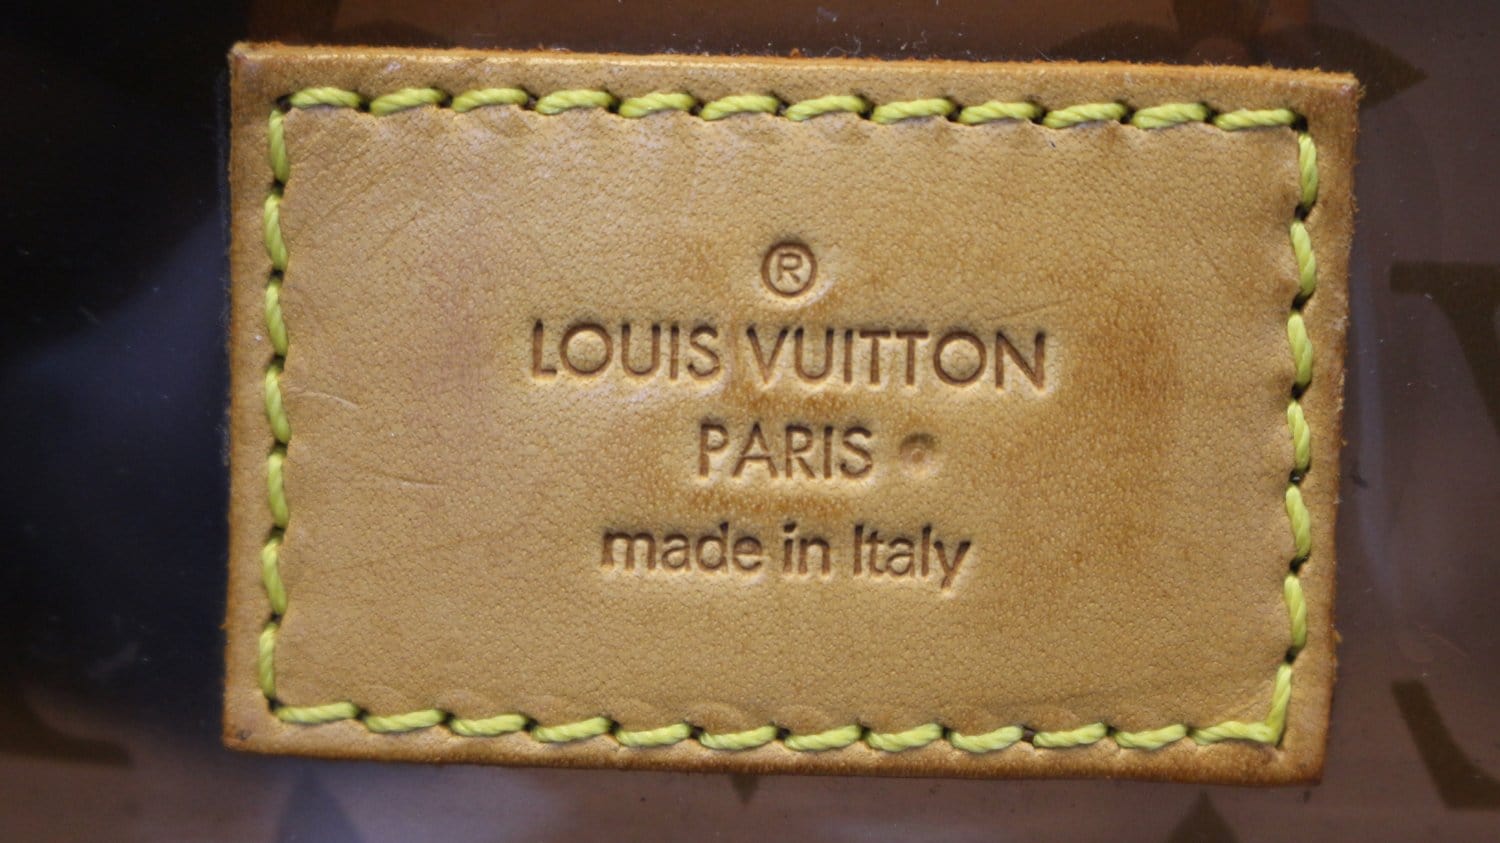 Louis Vuitton, Bags, Louis Vuitton Ambre Cabas Mm Limited Edition Tote